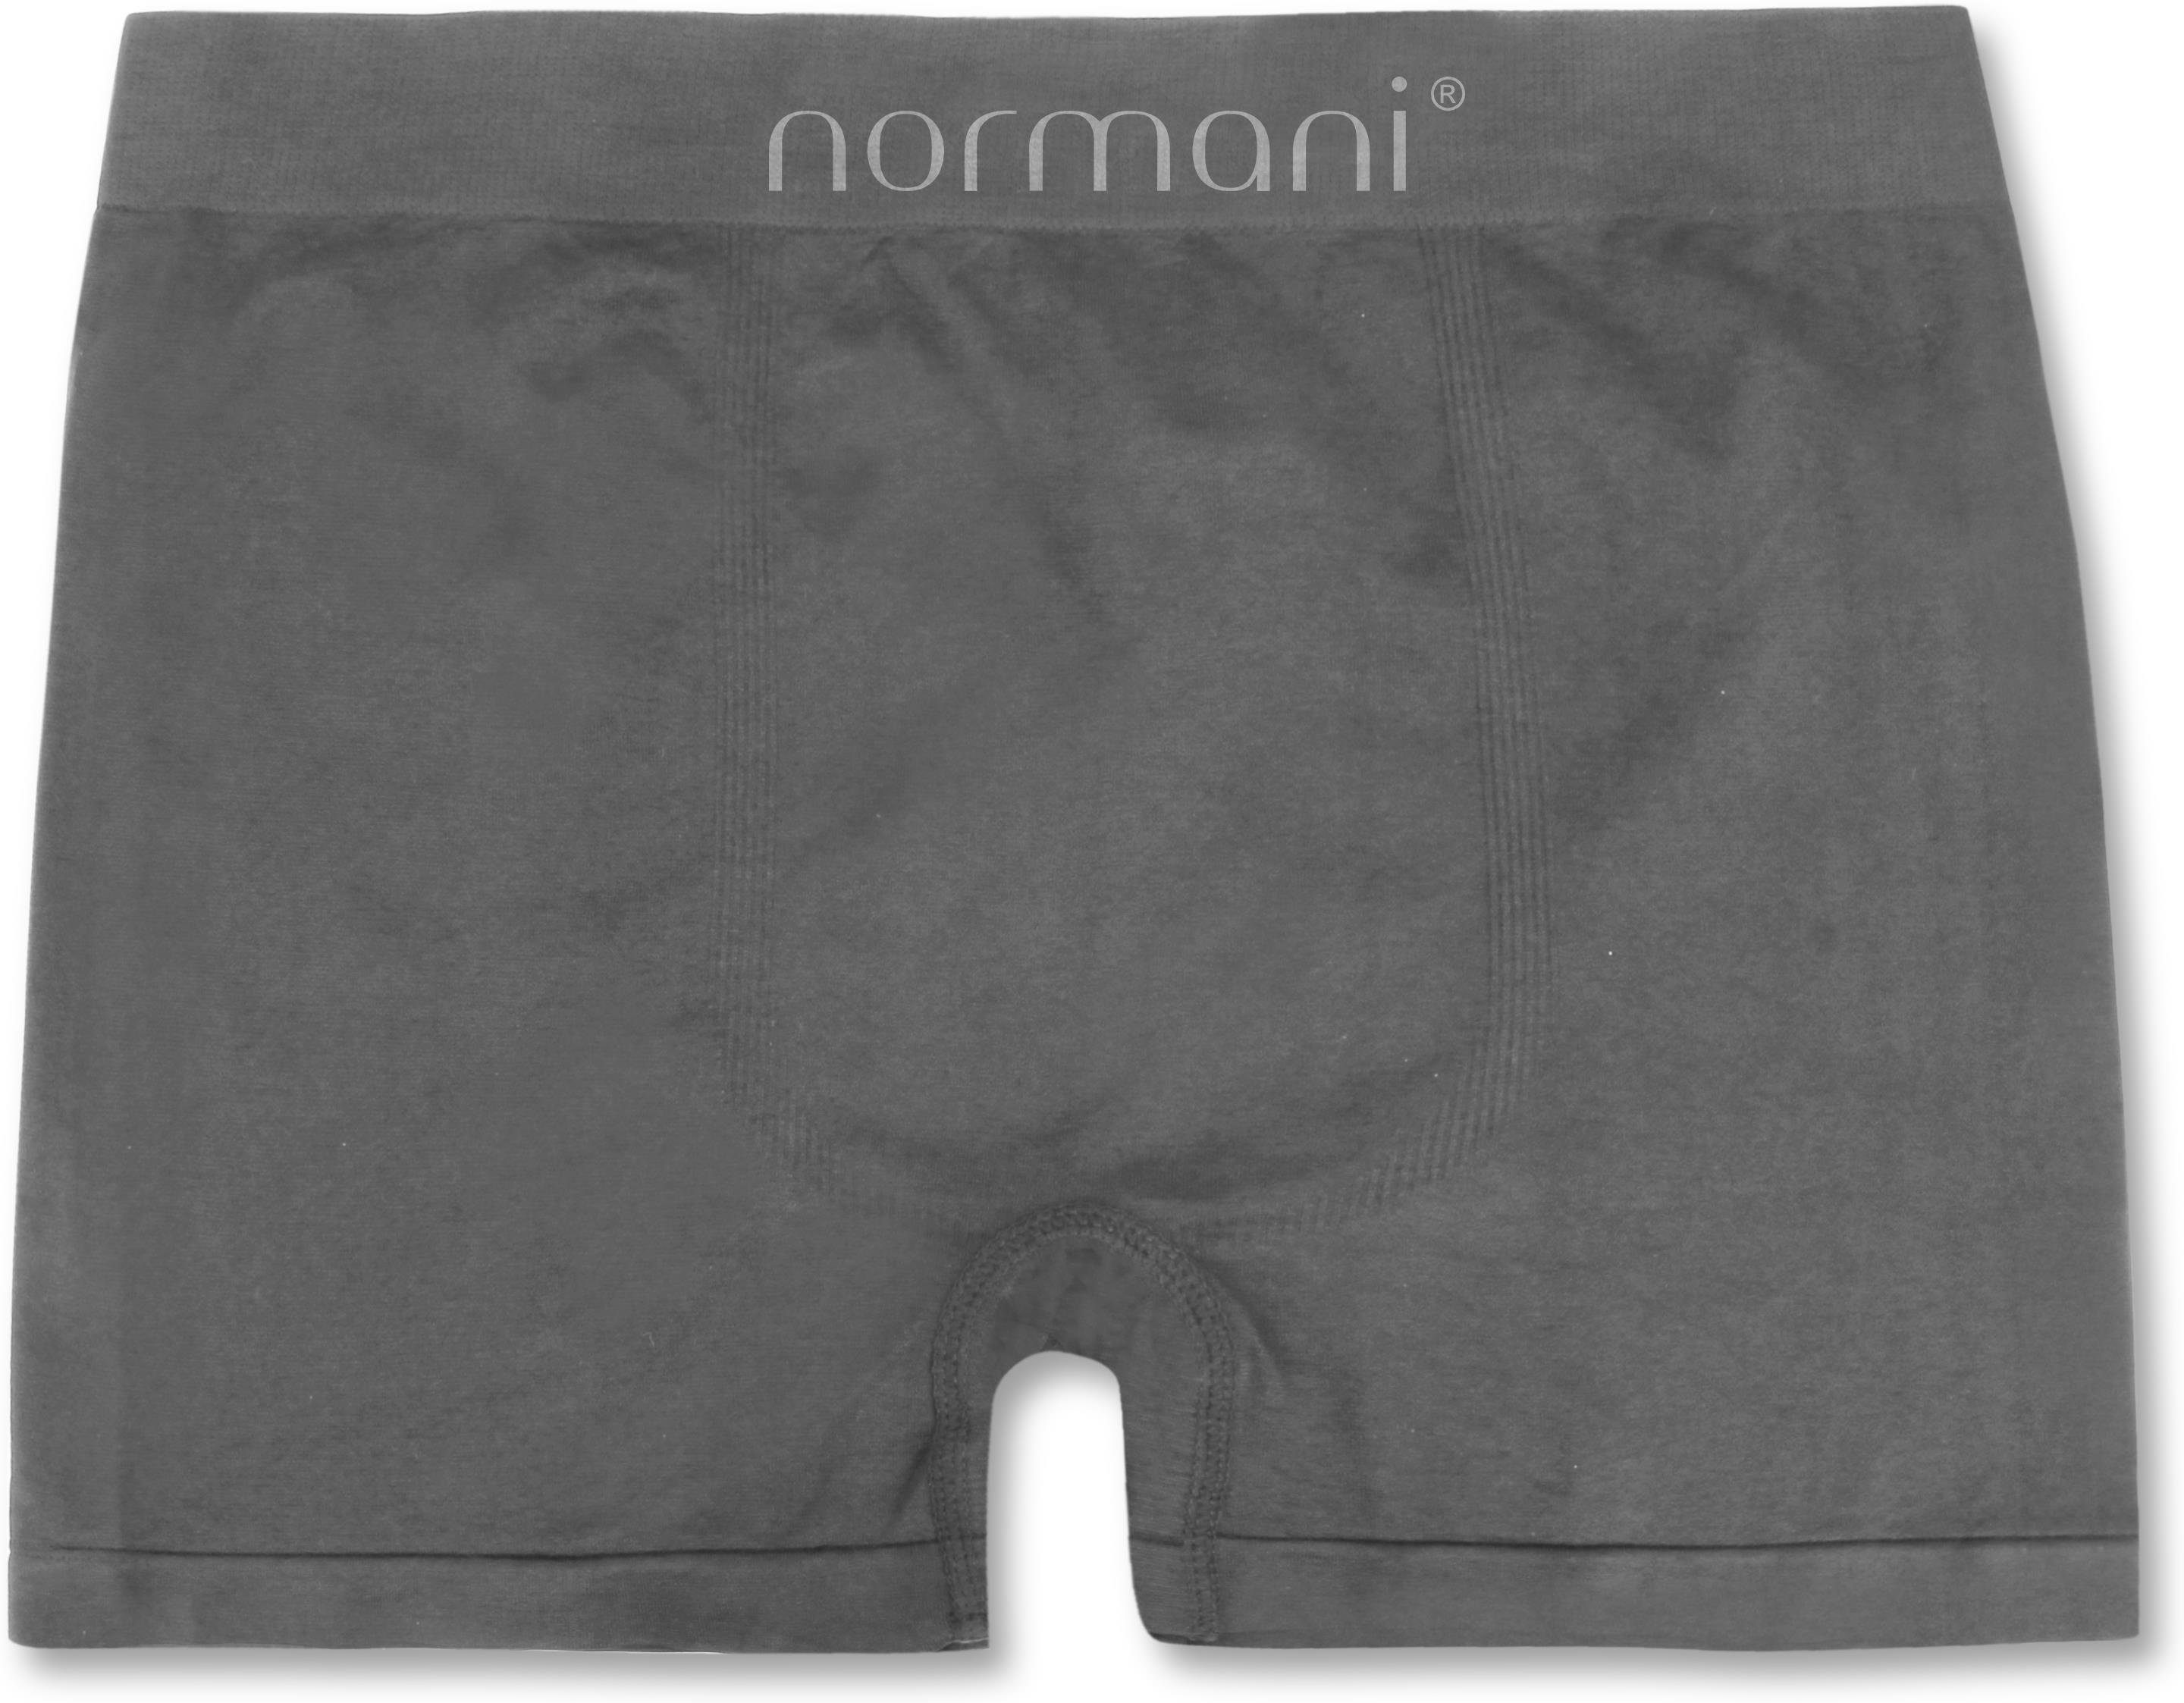 Männer Retro normani Material Retropants Stück für trocknendem Boxer Unterhosen schnell Herren Mikrofaser-Boxershorts Grau aus 12